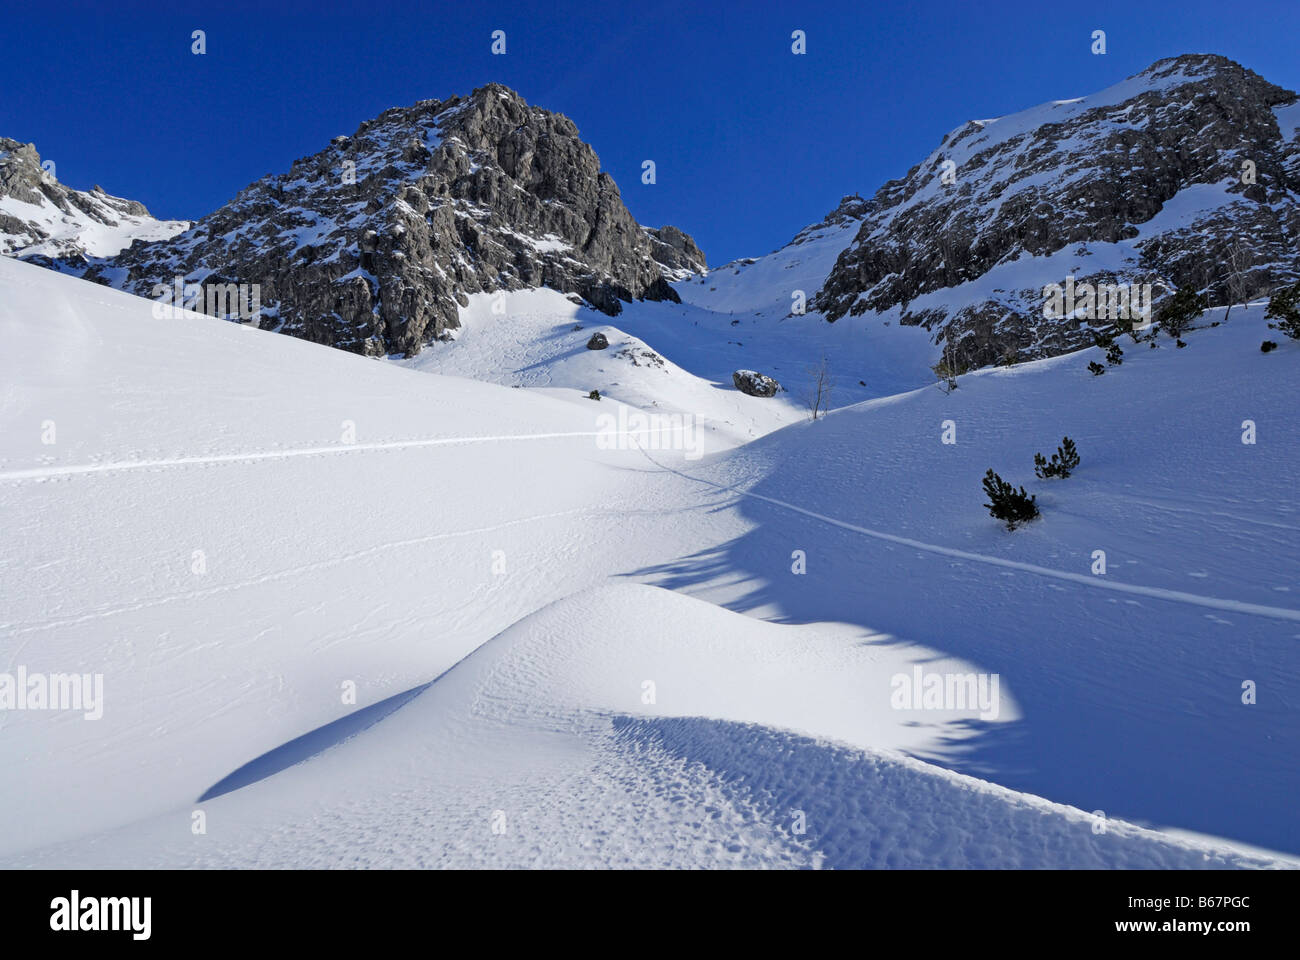 snow-covered cirque with snow dunes beneath Schafalpenkoepfe, Ochsenloch, Kleinwalsertal, Allgaeu range, Allgaeu, Vorarlberg, Au Stock Photo